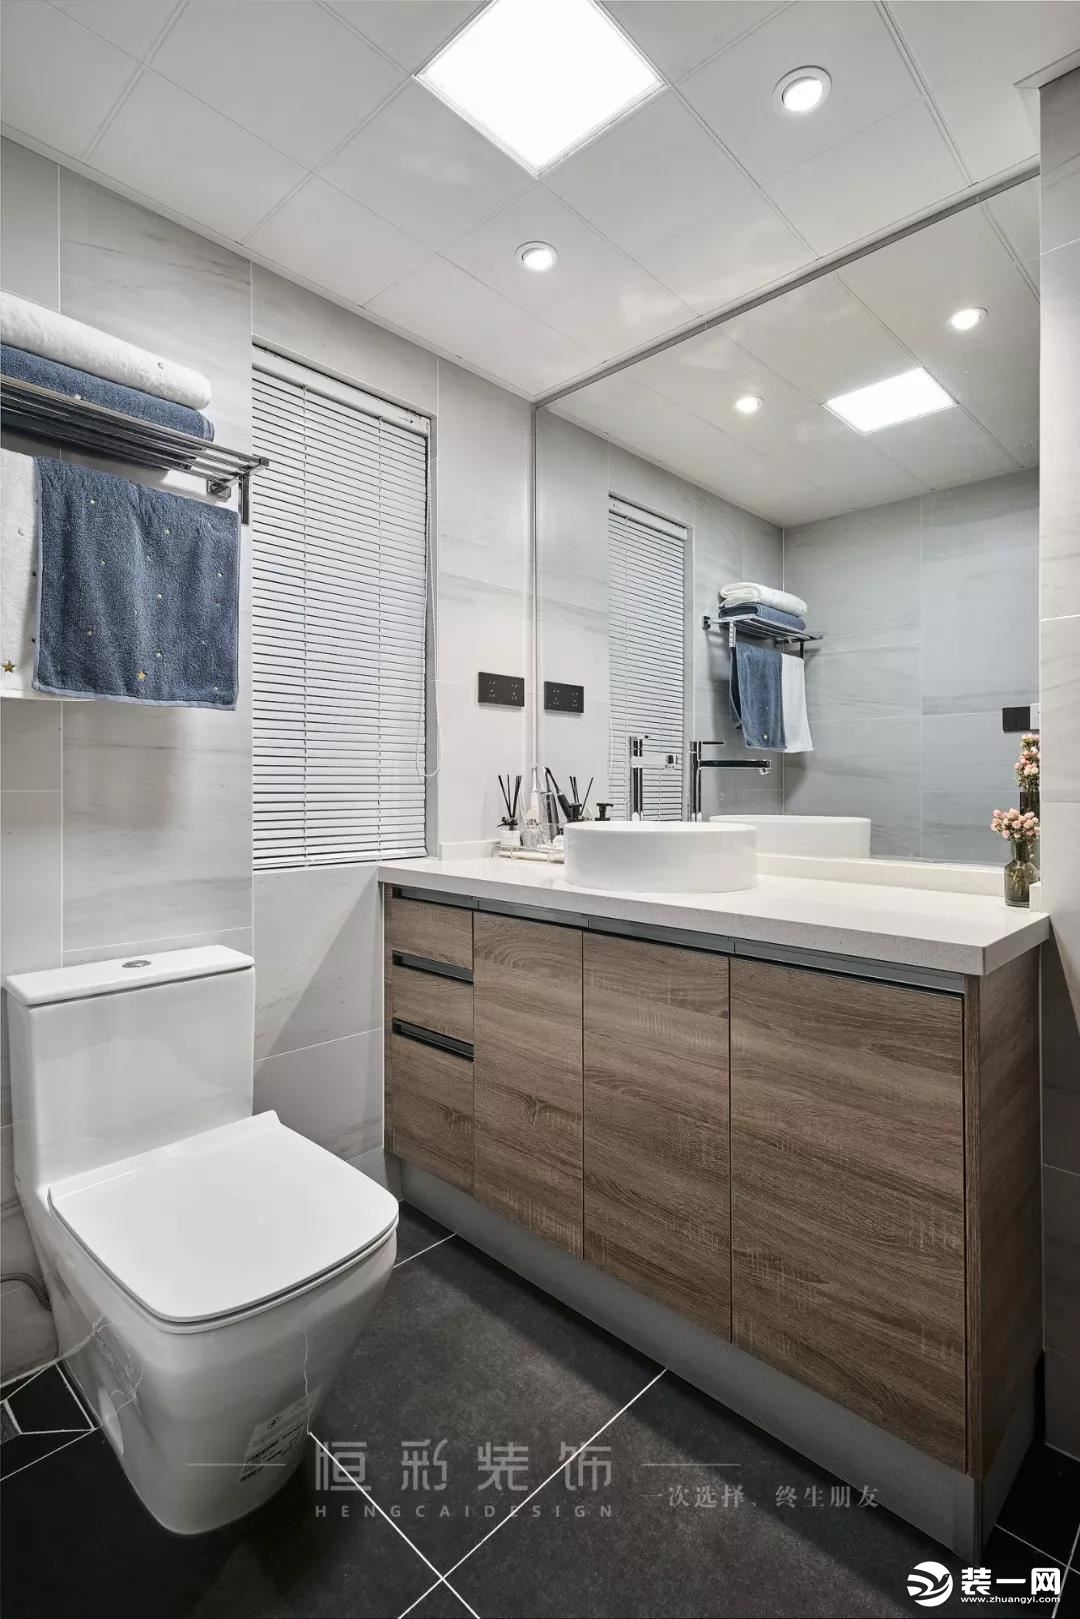 卫生间以实用为主，浅色配色清爽舒适，浅灰色雾面地砖提升空间质感。